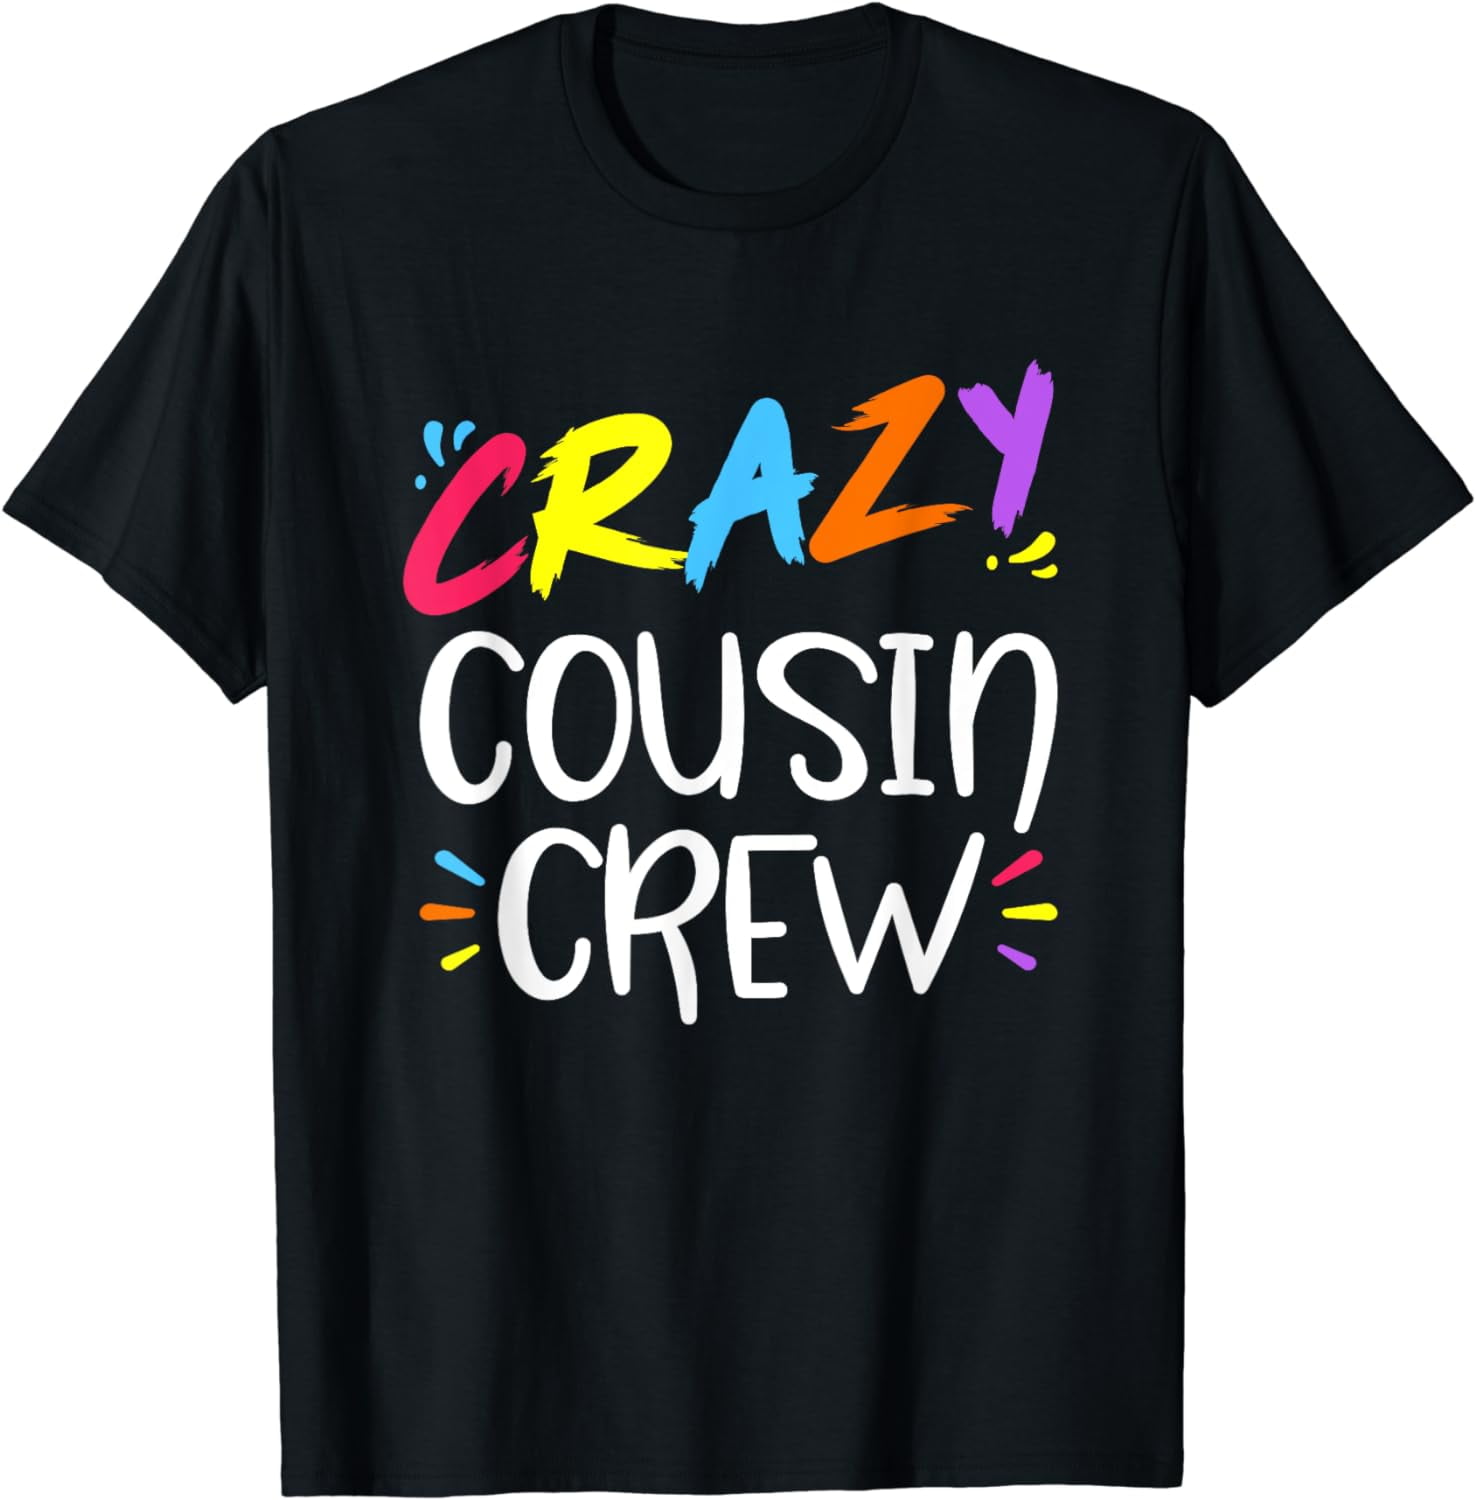 Crazy cousin crew T-Shirt - Walmart.com